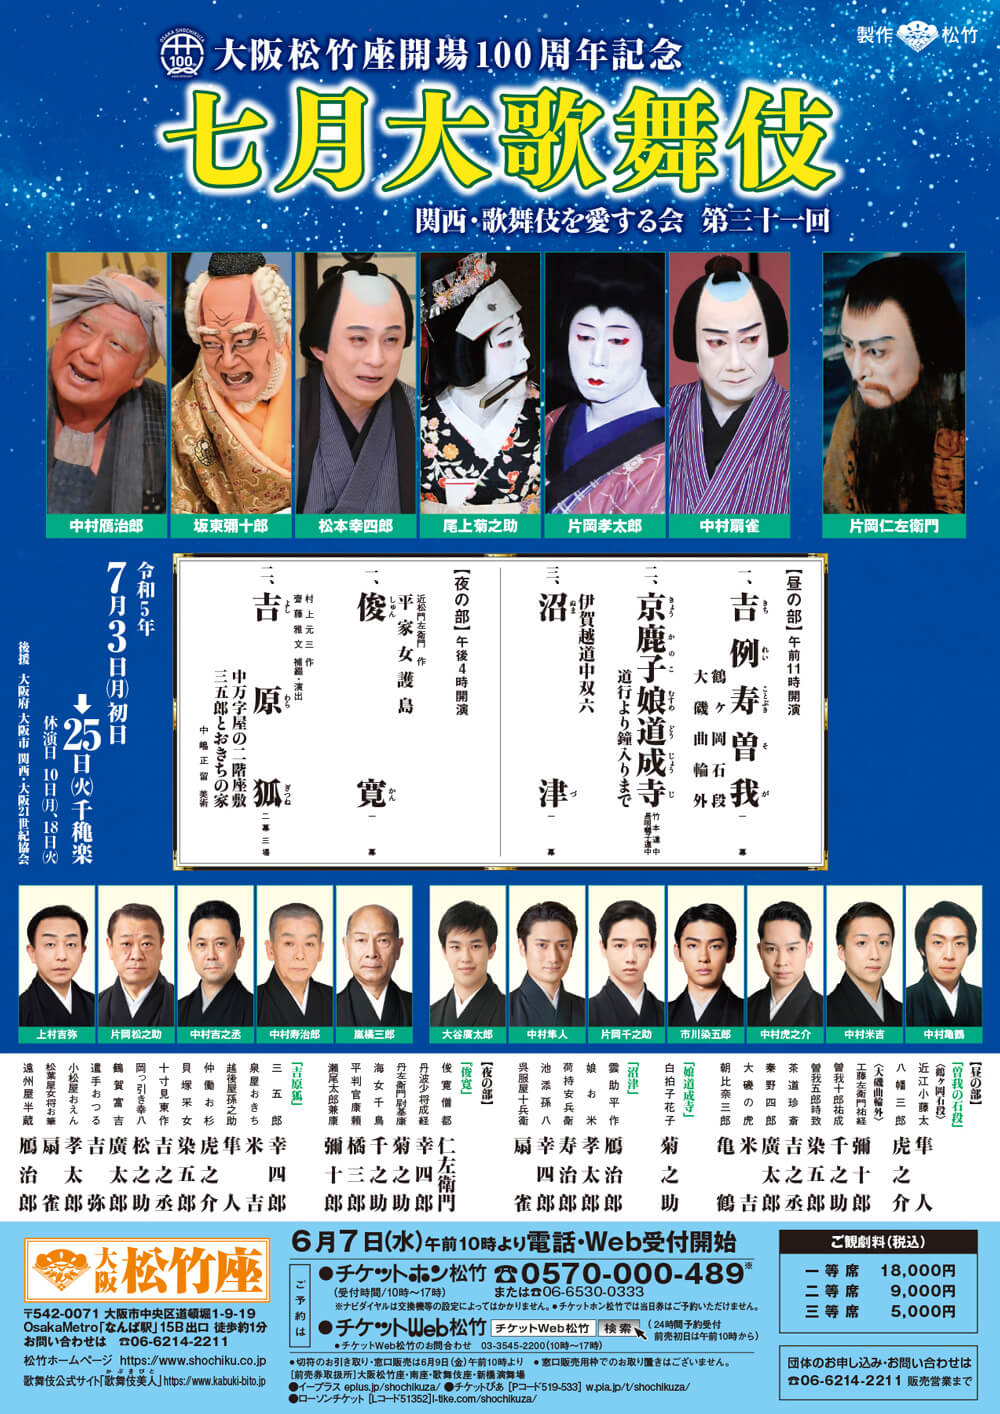 
大阪松竹座開場100周年記念
七月大歌舞伎
関西・歌舞伎を愛する会 第三十一回
